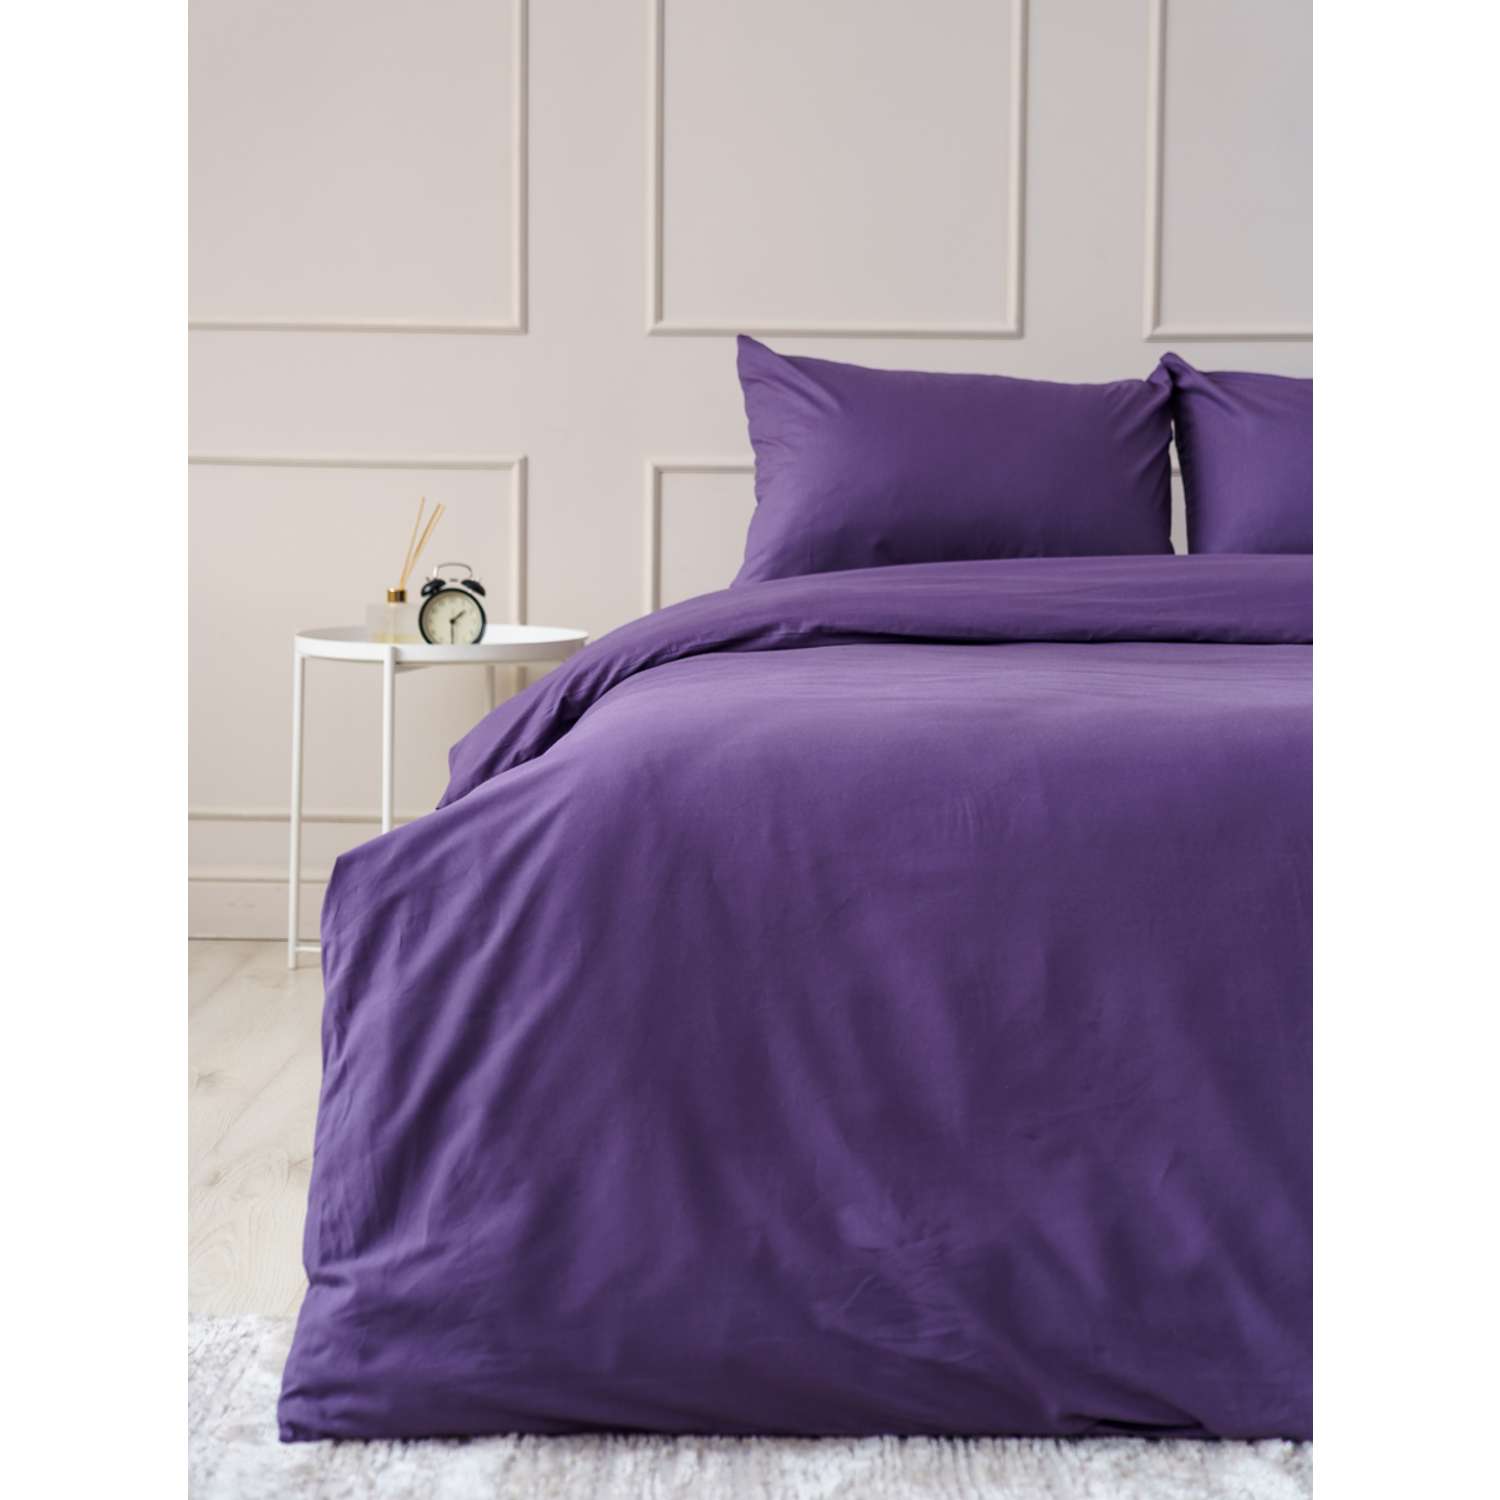 Комплект постельного белья IDEASON поплин 3 предмета 1.5 сп. фиолетовый - фото 3